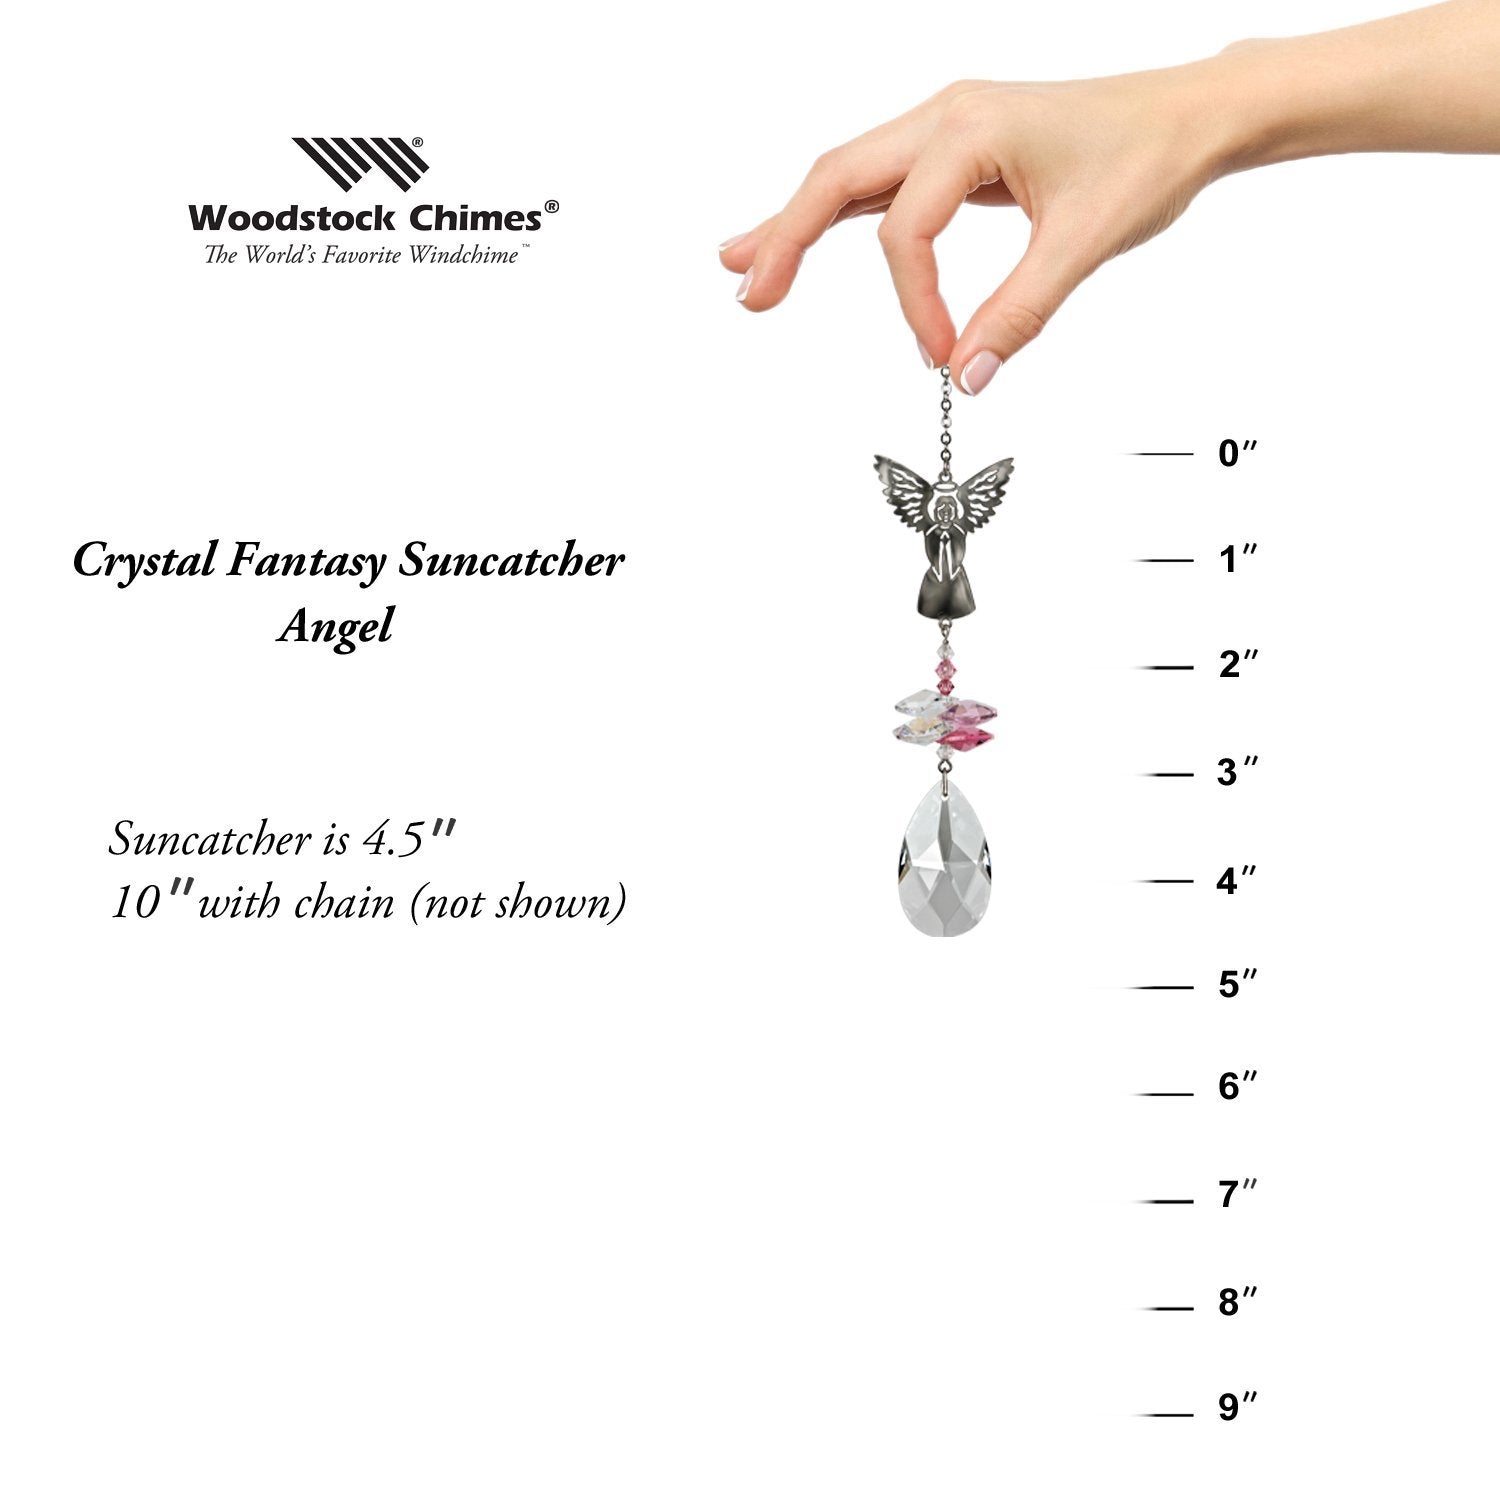 Crystal Fantasy Suncatcher - Angel proportion image